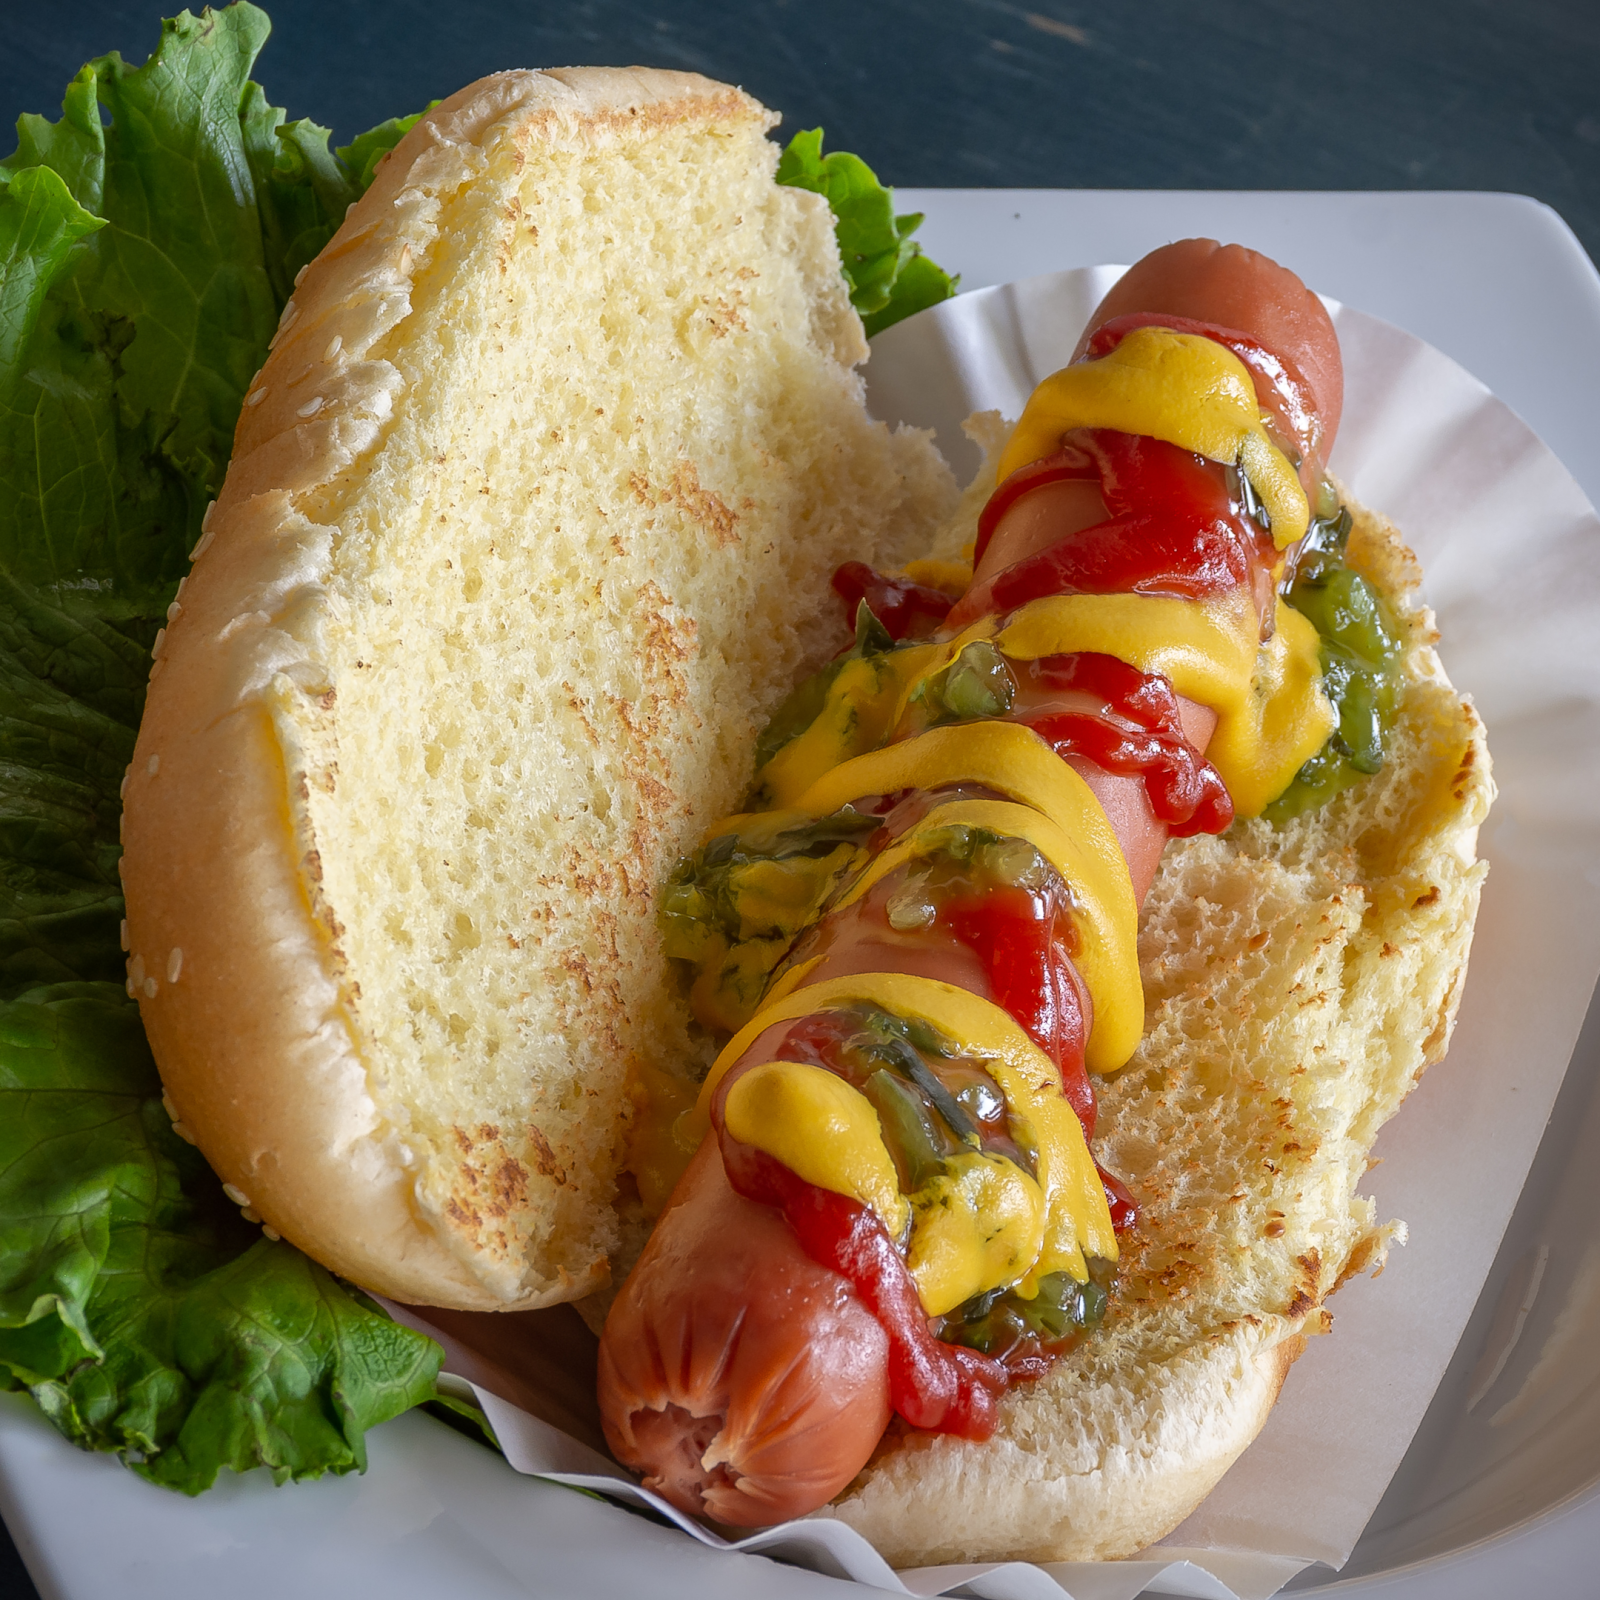 hot dog with mustard, ketchup and relish